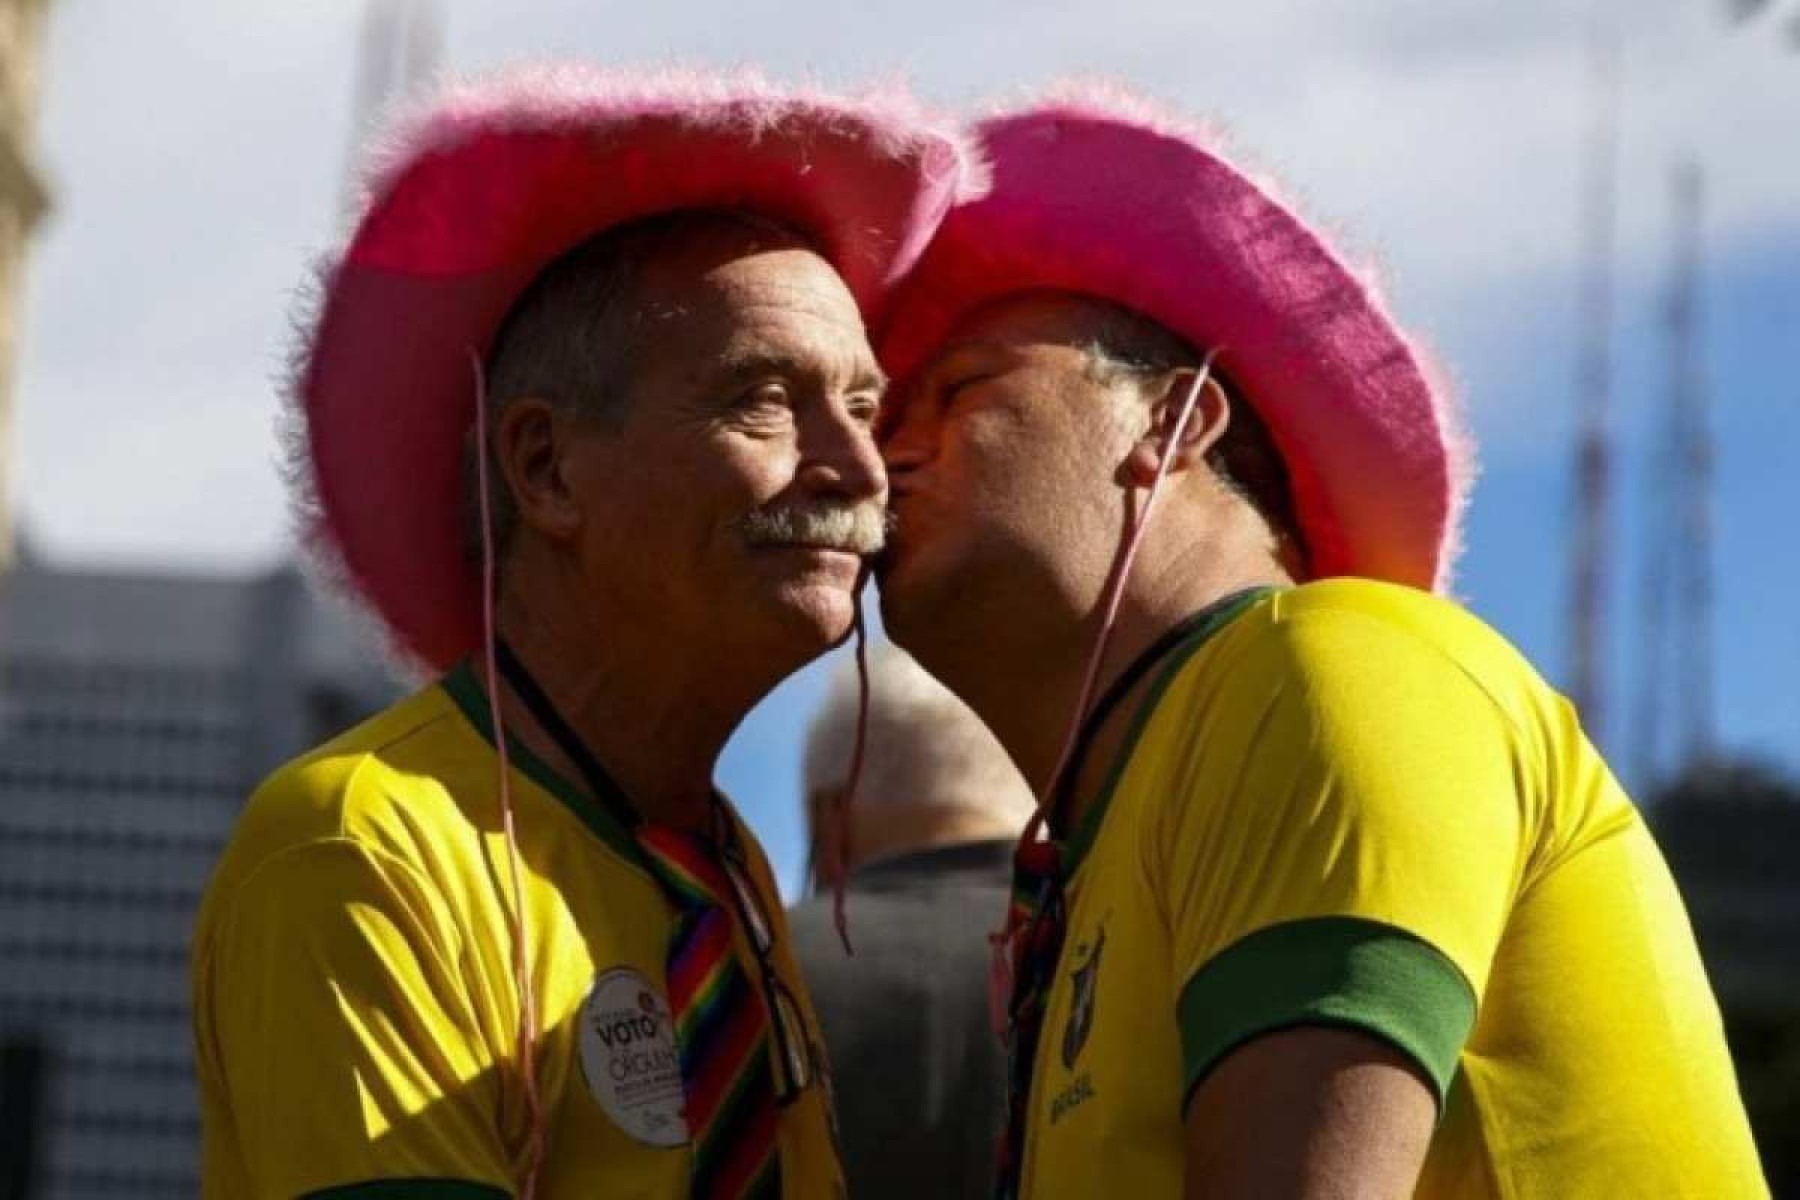 Parada LGBT+ de São Paulo reúne multidão nas cores verde e amarelo